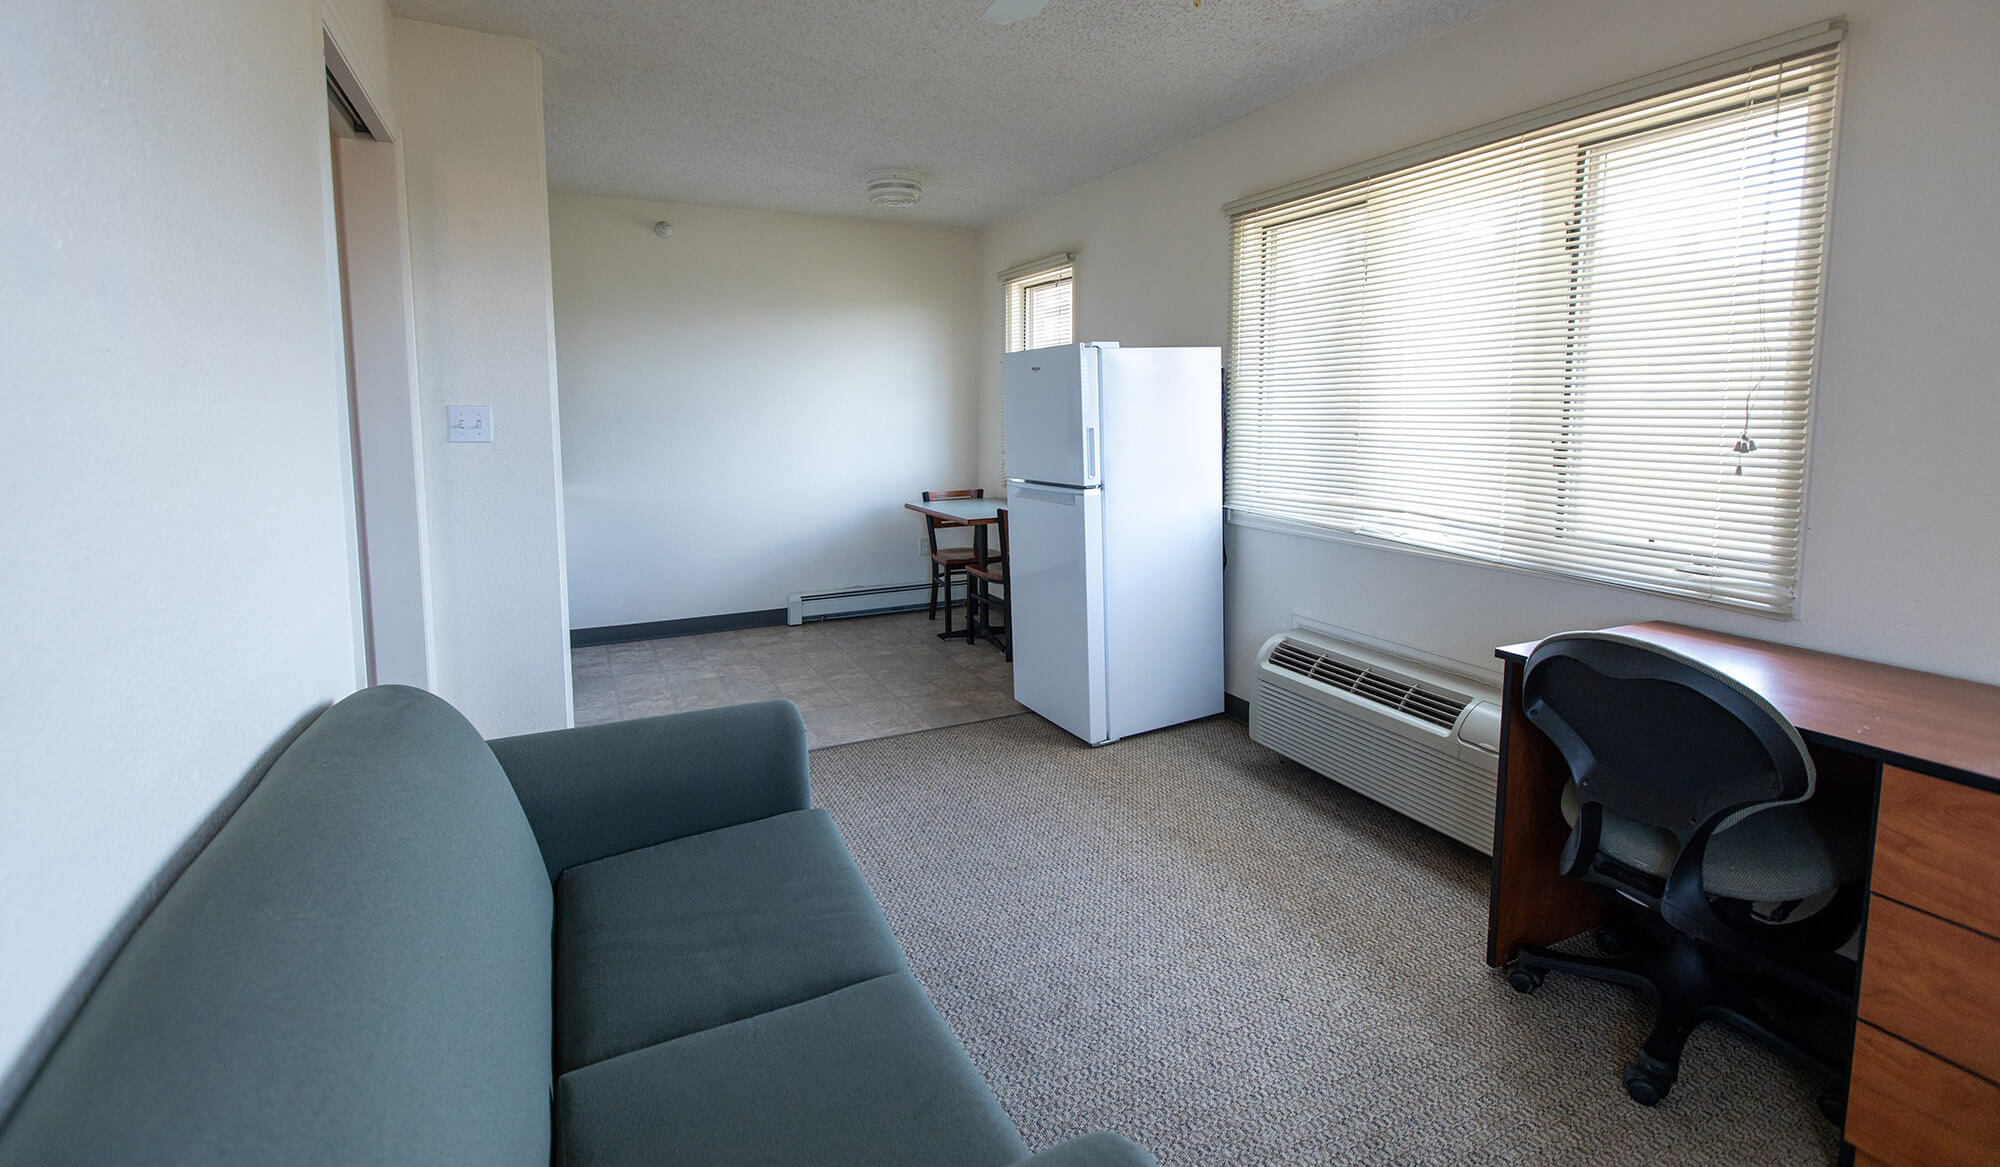 casper college thorson Apartment Interiors 21